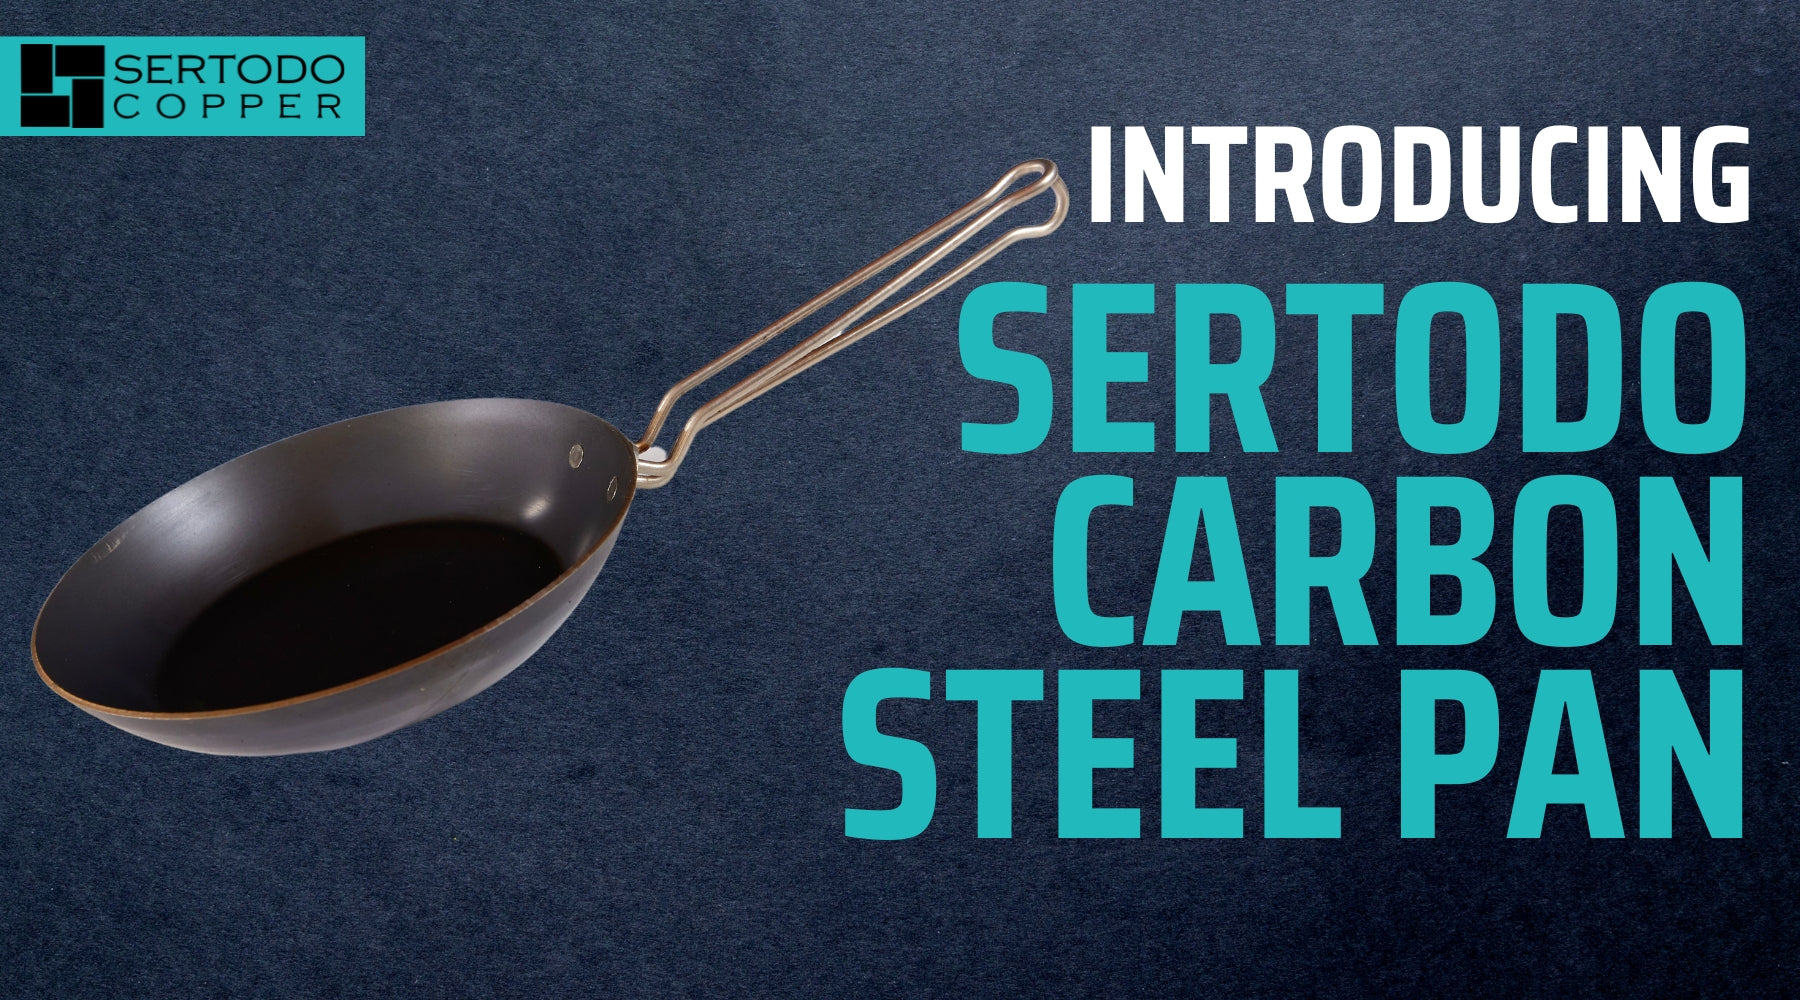 Carbon Steel pan